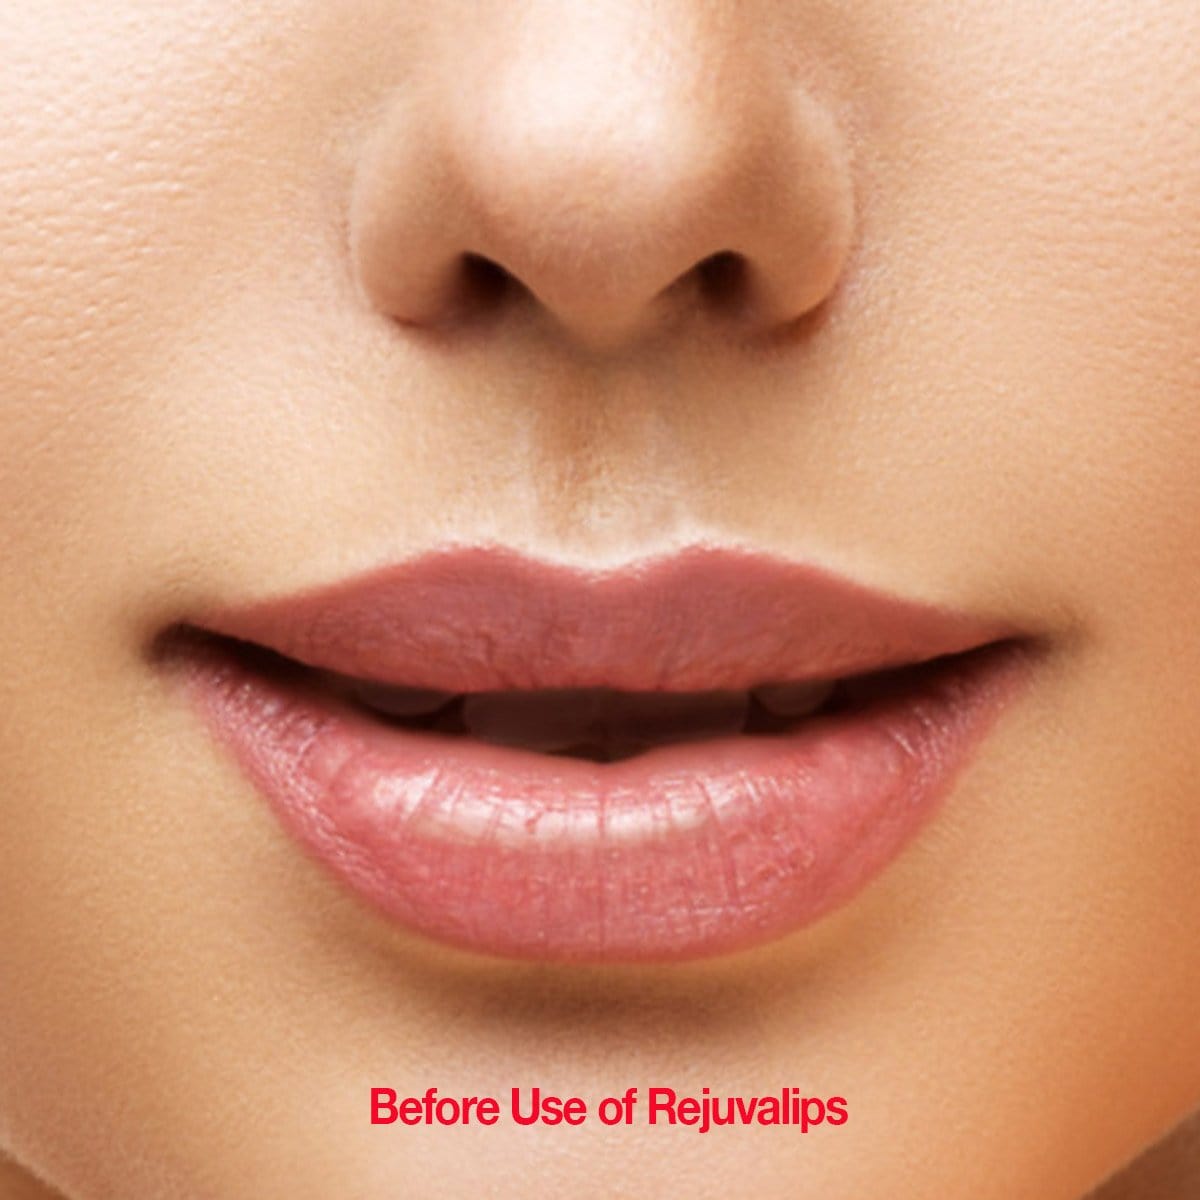 Rujuvalips Lip Plumper and Enhancer